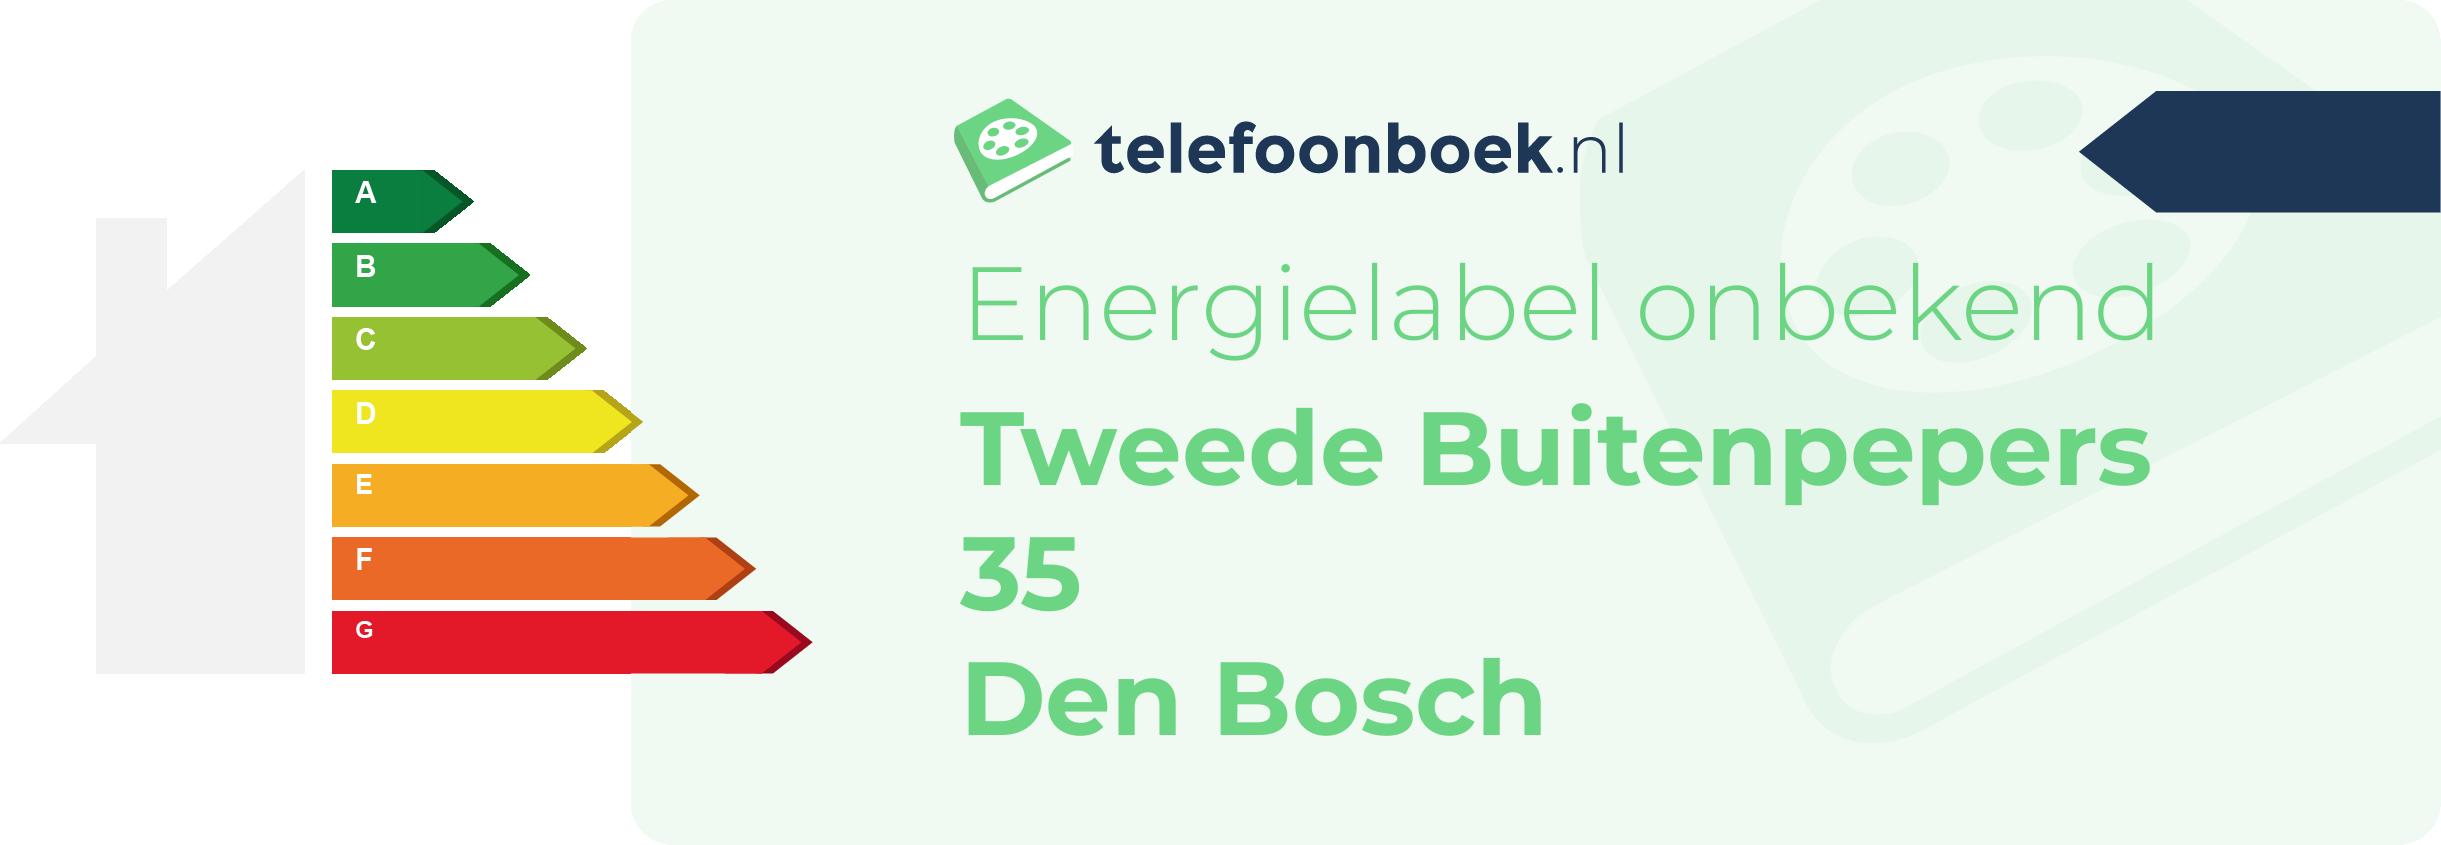 Energielabel Tweede Buitenpepers 35 Den Bosch